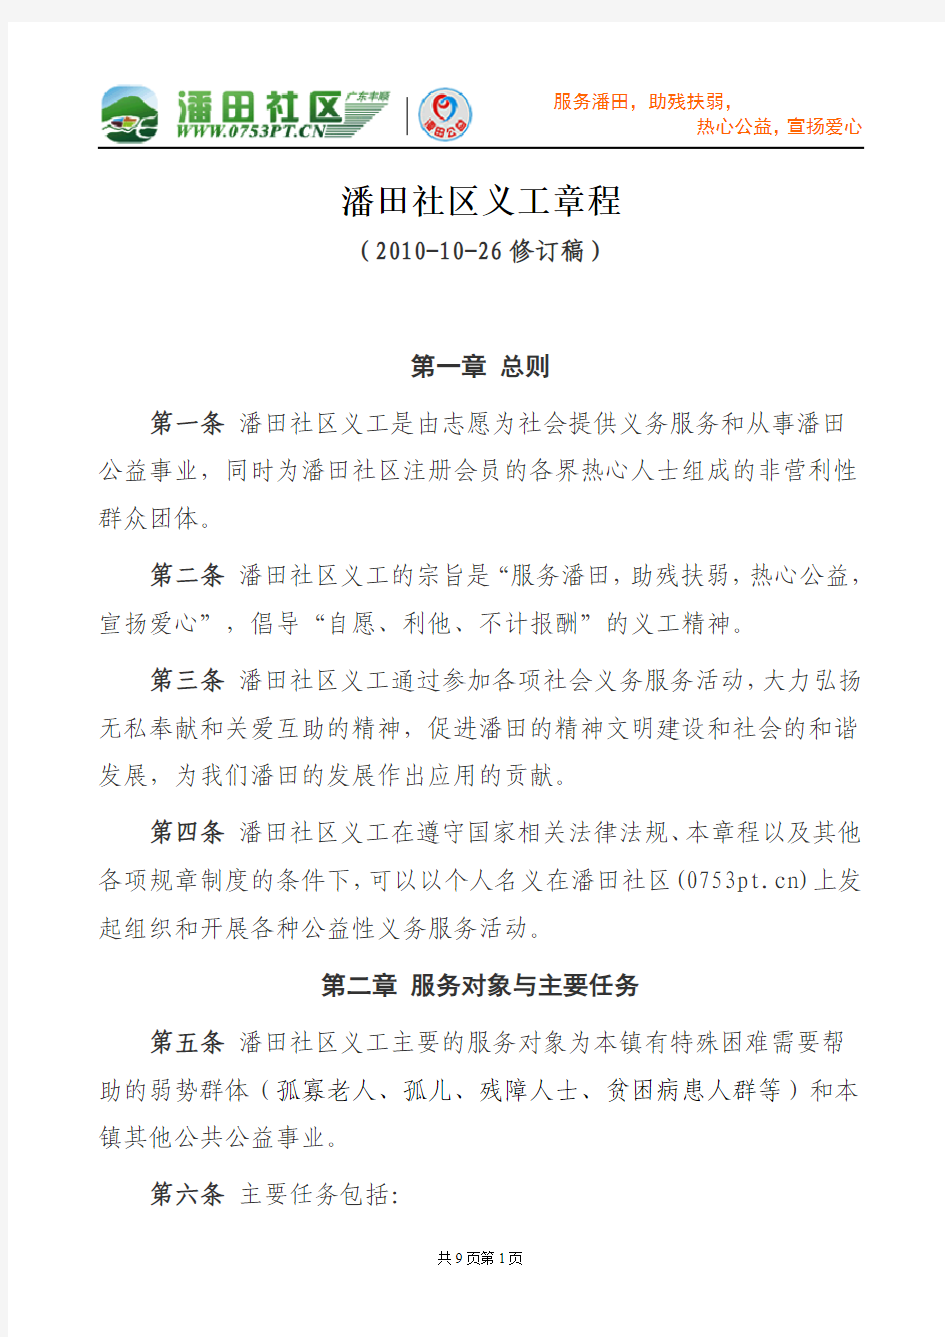 潘田社区义工章程(2010-10-26修订稿)